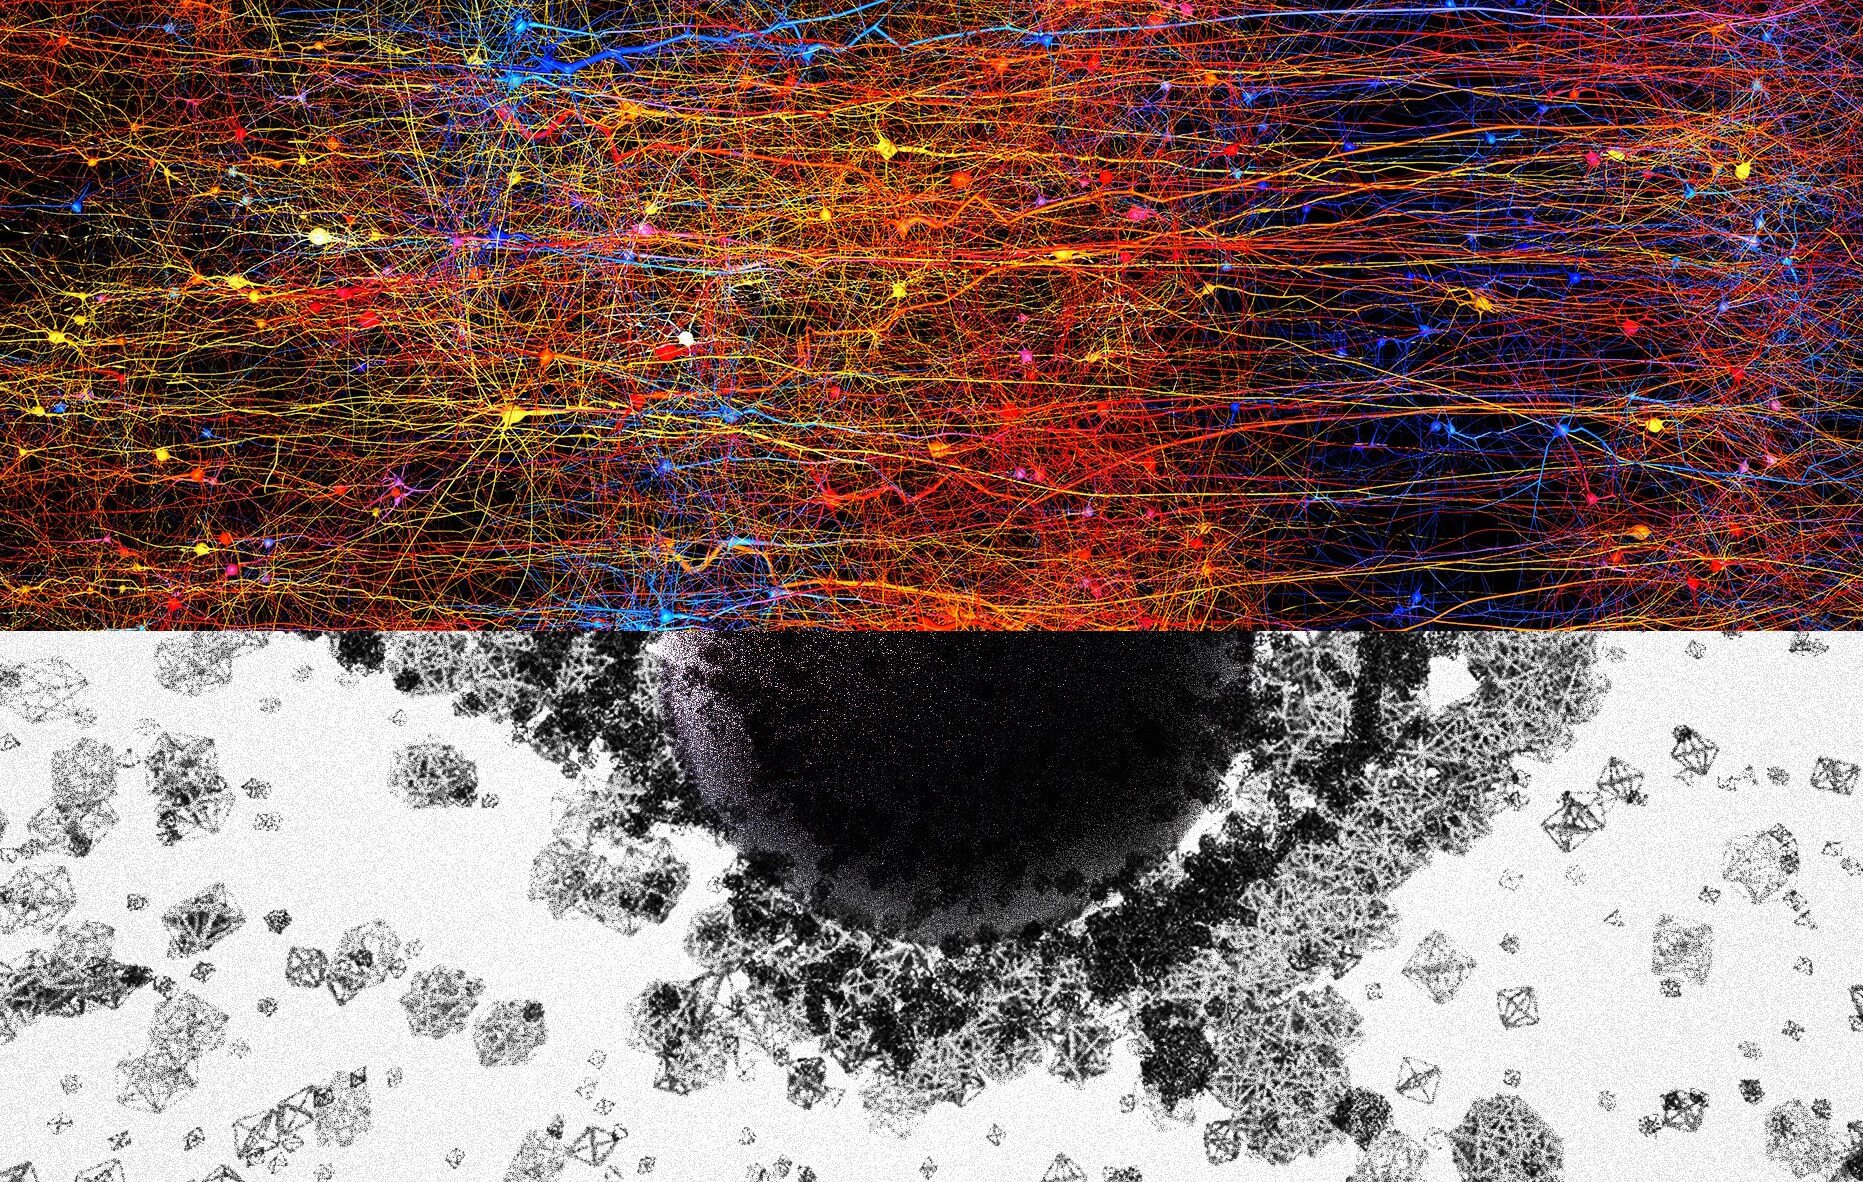 Мозг строит странные структуры в 11 измерениях. Работа мозга – величайшая загадка науки. Фото.